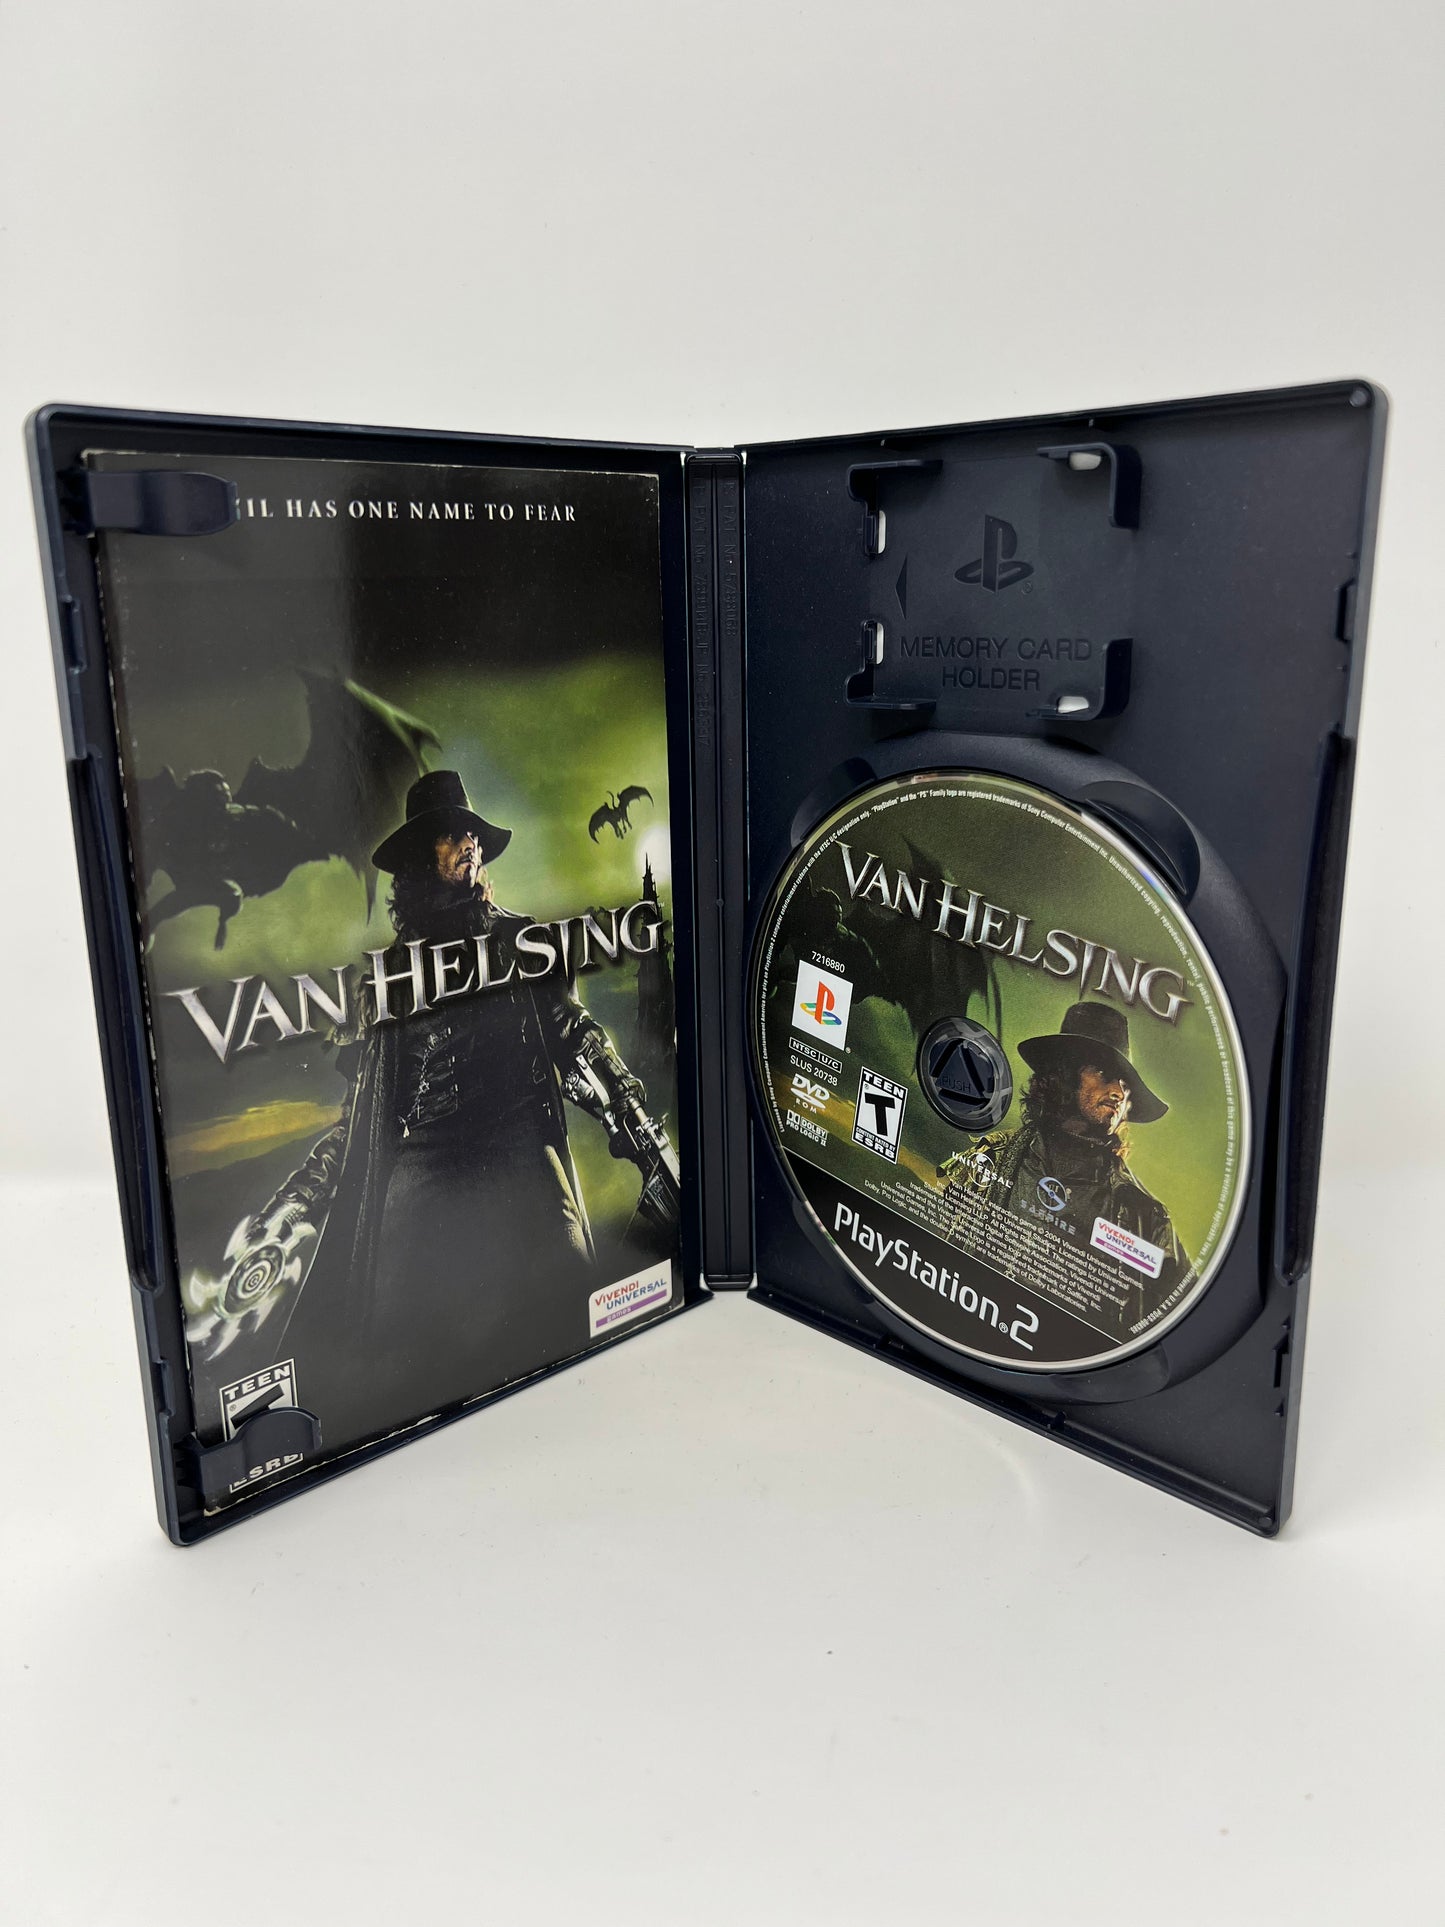 Van Helsing - PS2 Game - Used